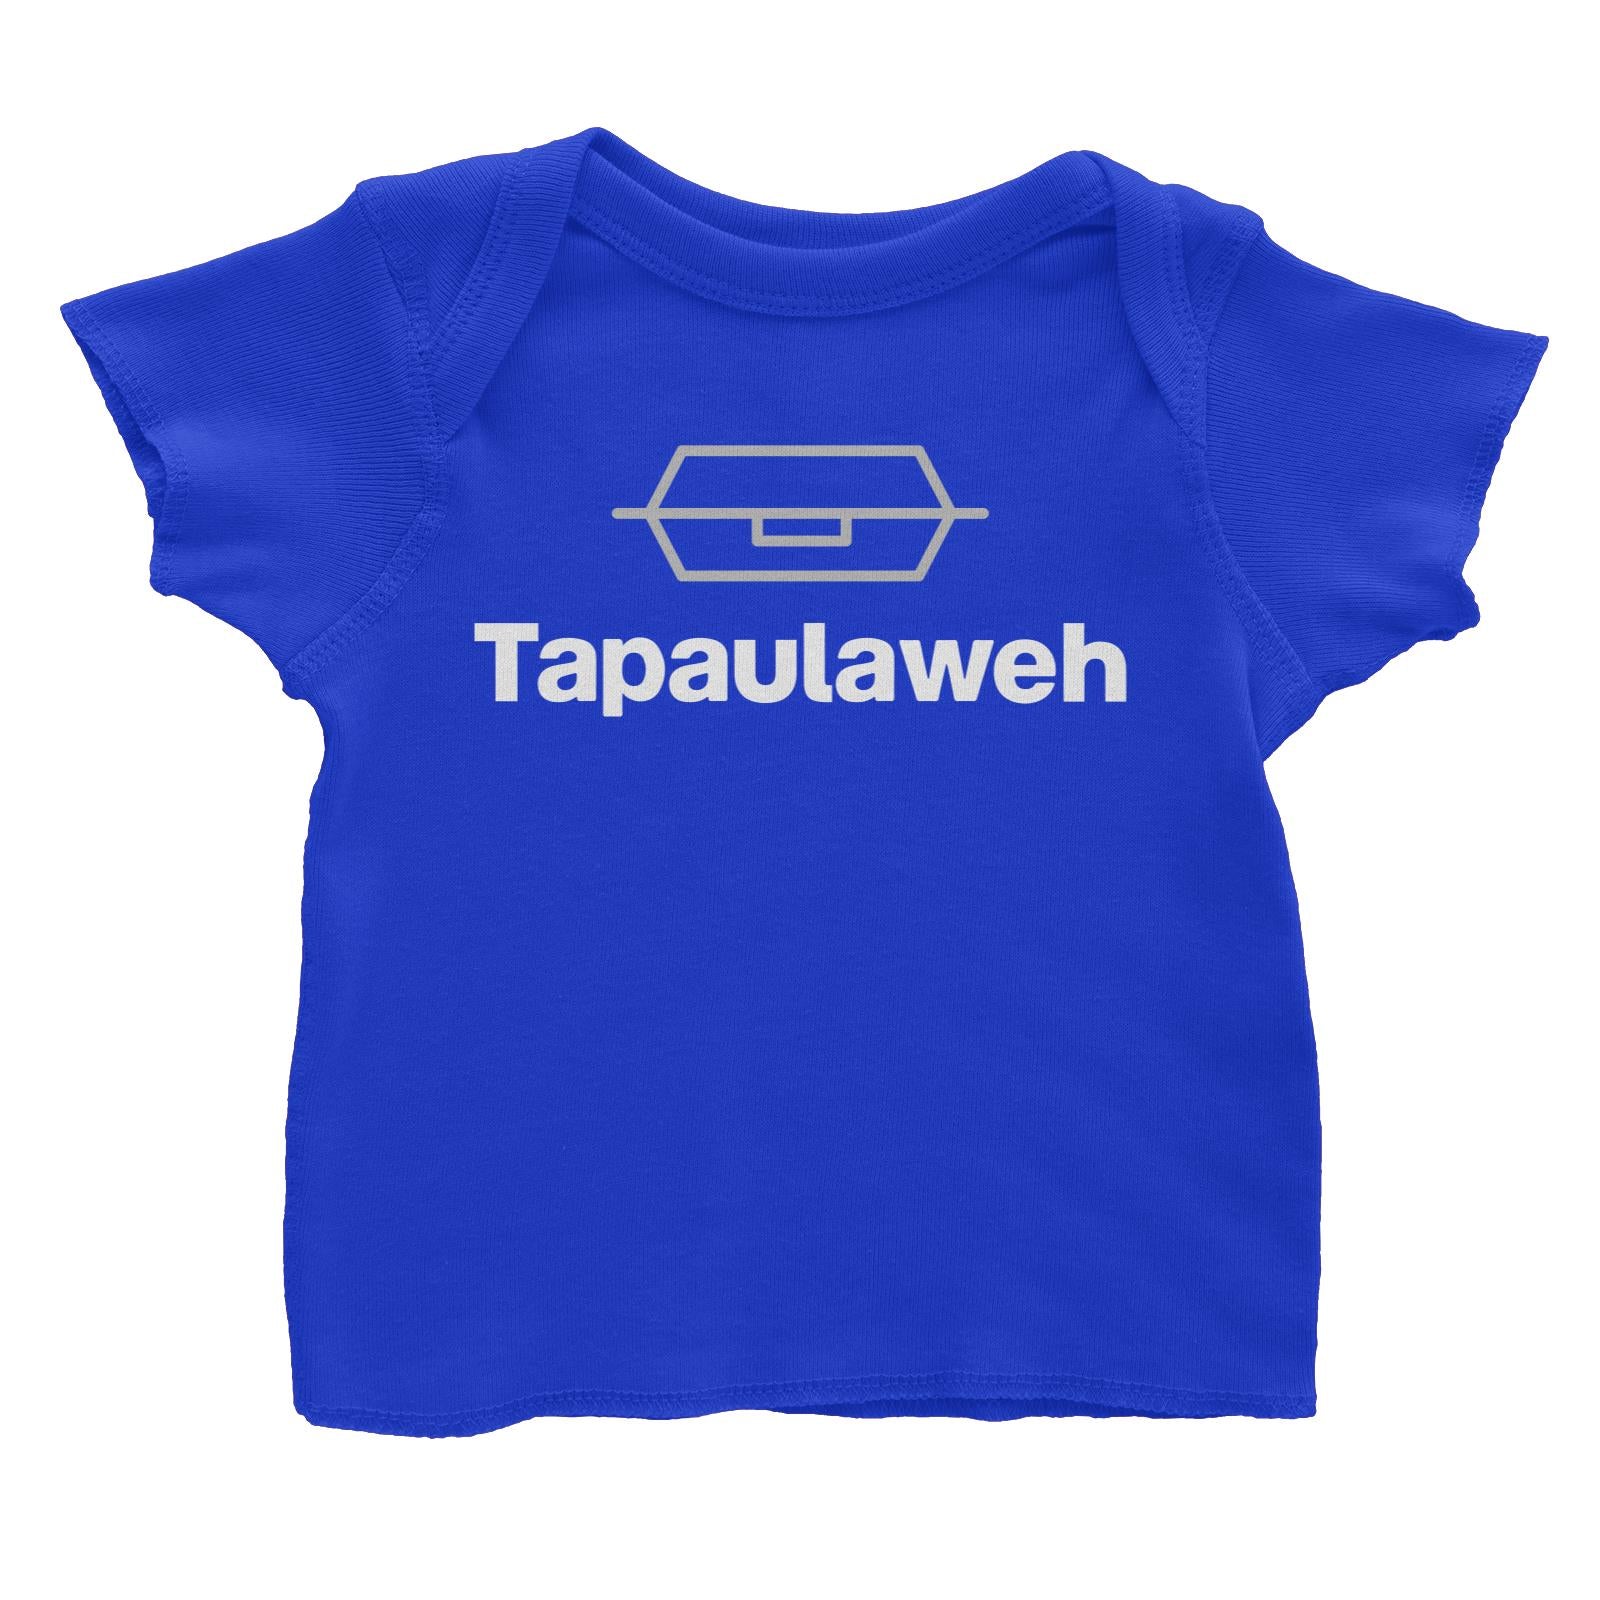 Slang Statement Tapaulaweh Baby T-Shirt